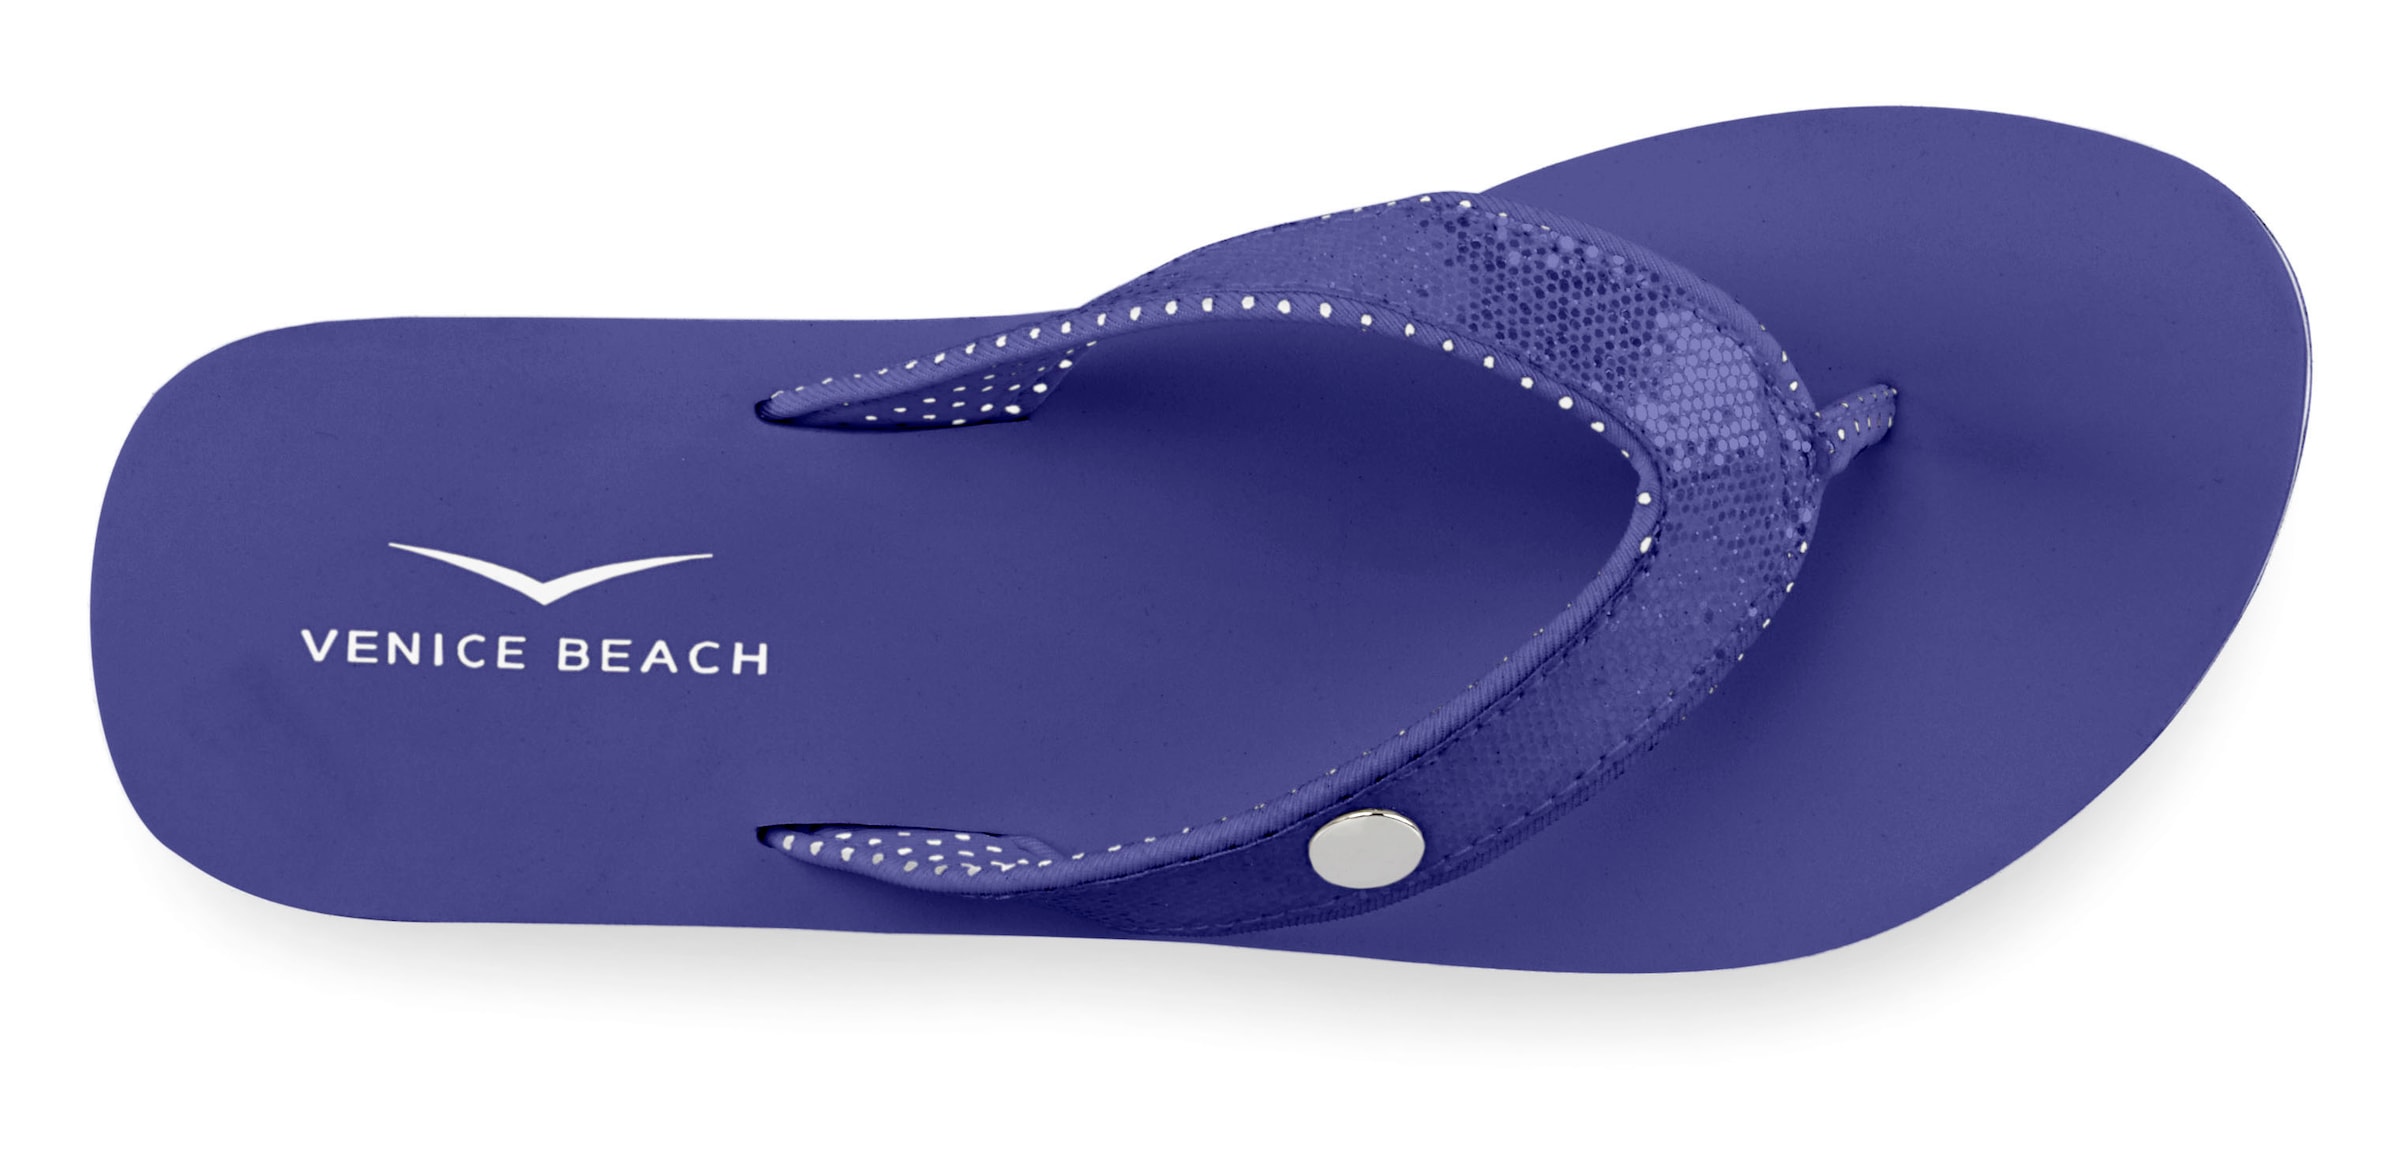 Venice Beach Badezehentrenner, Sandale, Pantolette, Badeschuh ultraleicht mit Glitzerband VEGAN